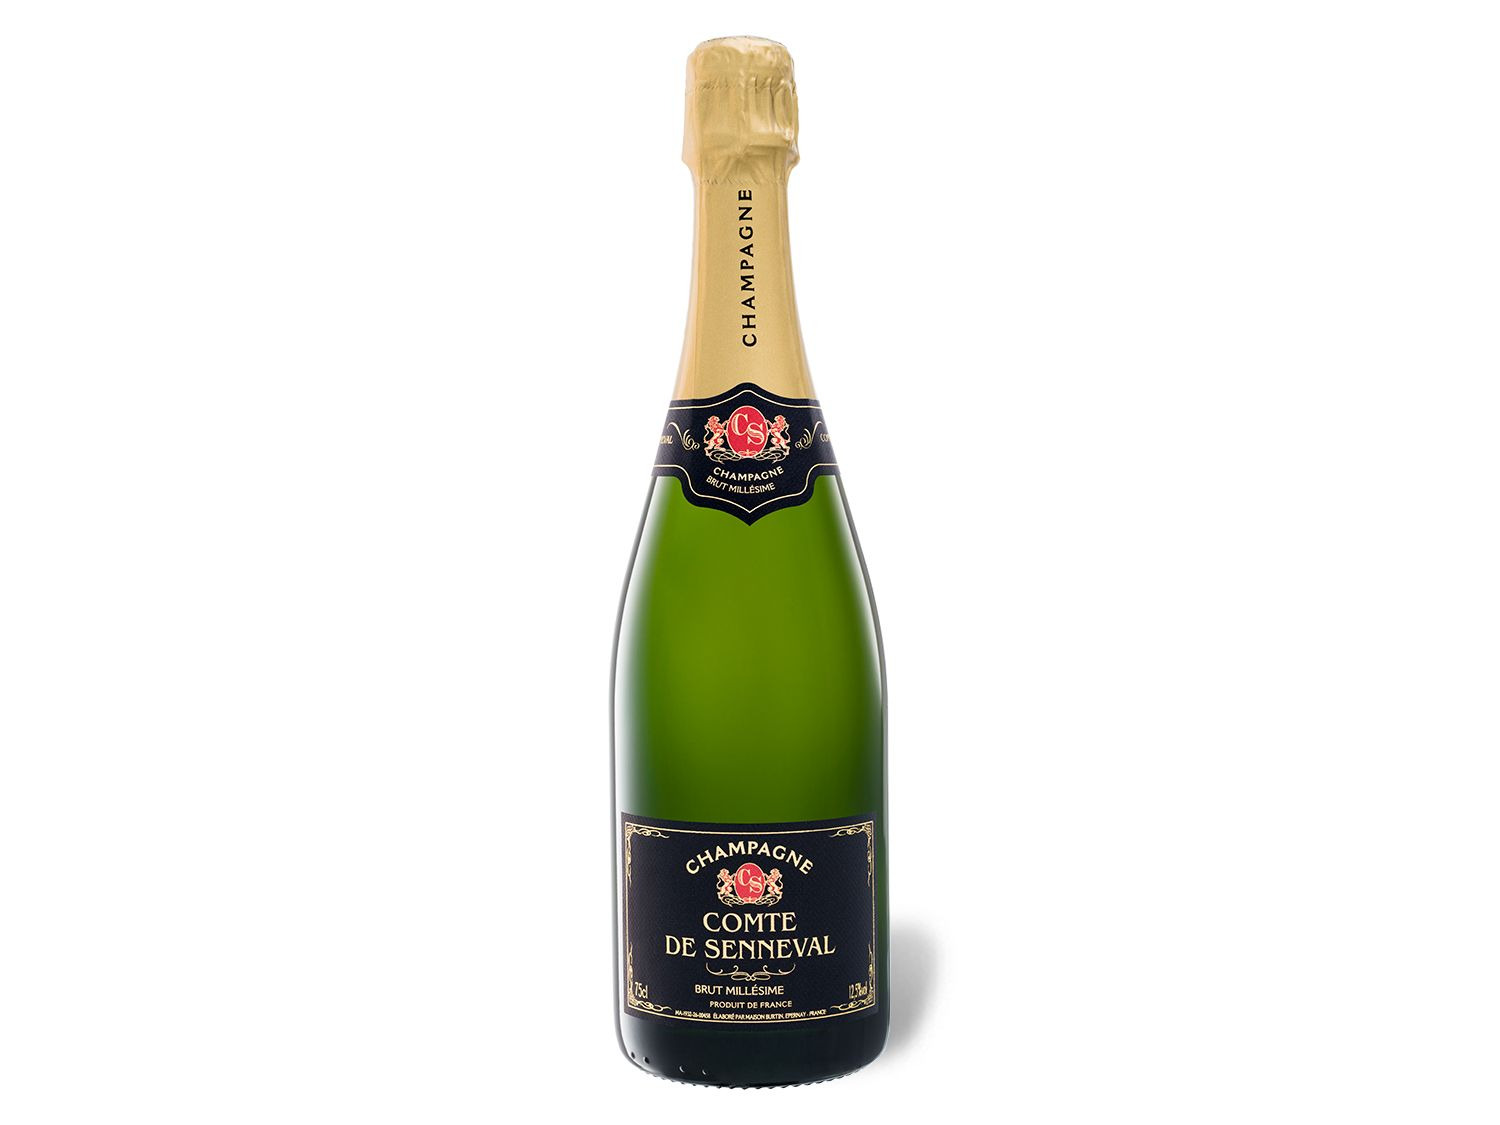 Comte de Senneval Brut Champagner 2014 Millésime